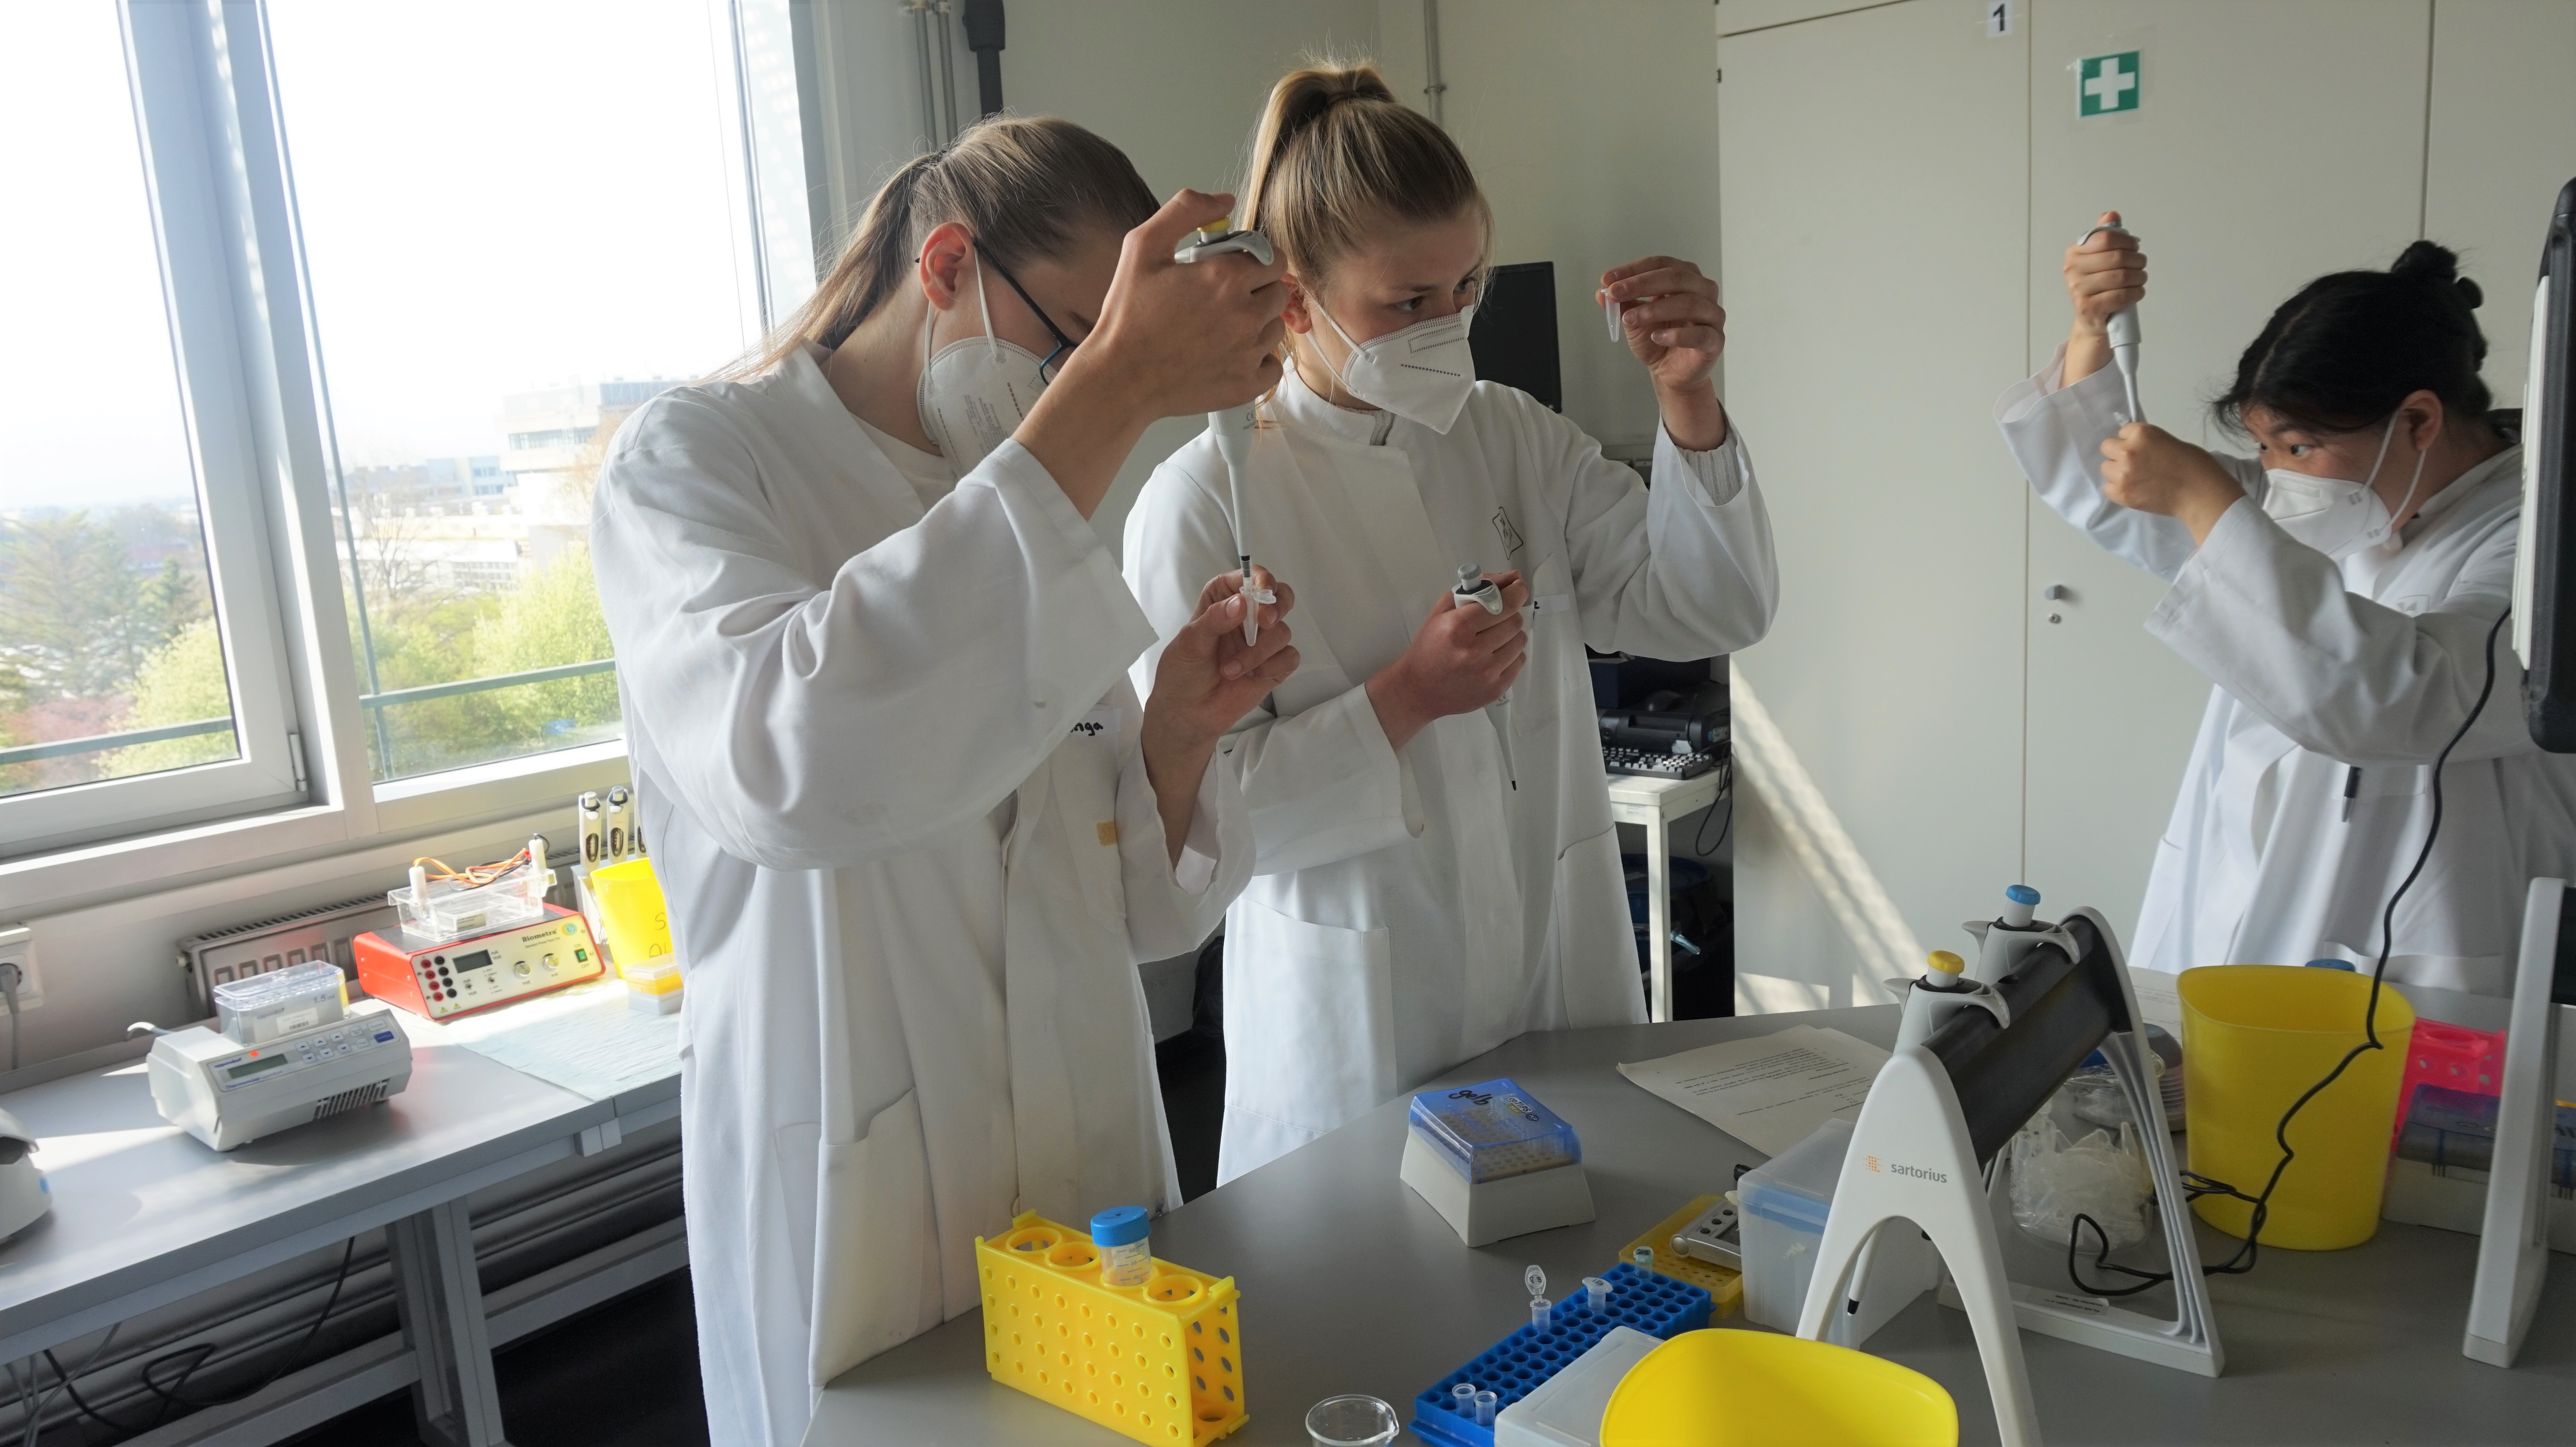 Schüler:innen im MINT-EC Schülercamp im XLAB in Göttingen, Experimente mit Pipetten im Labor